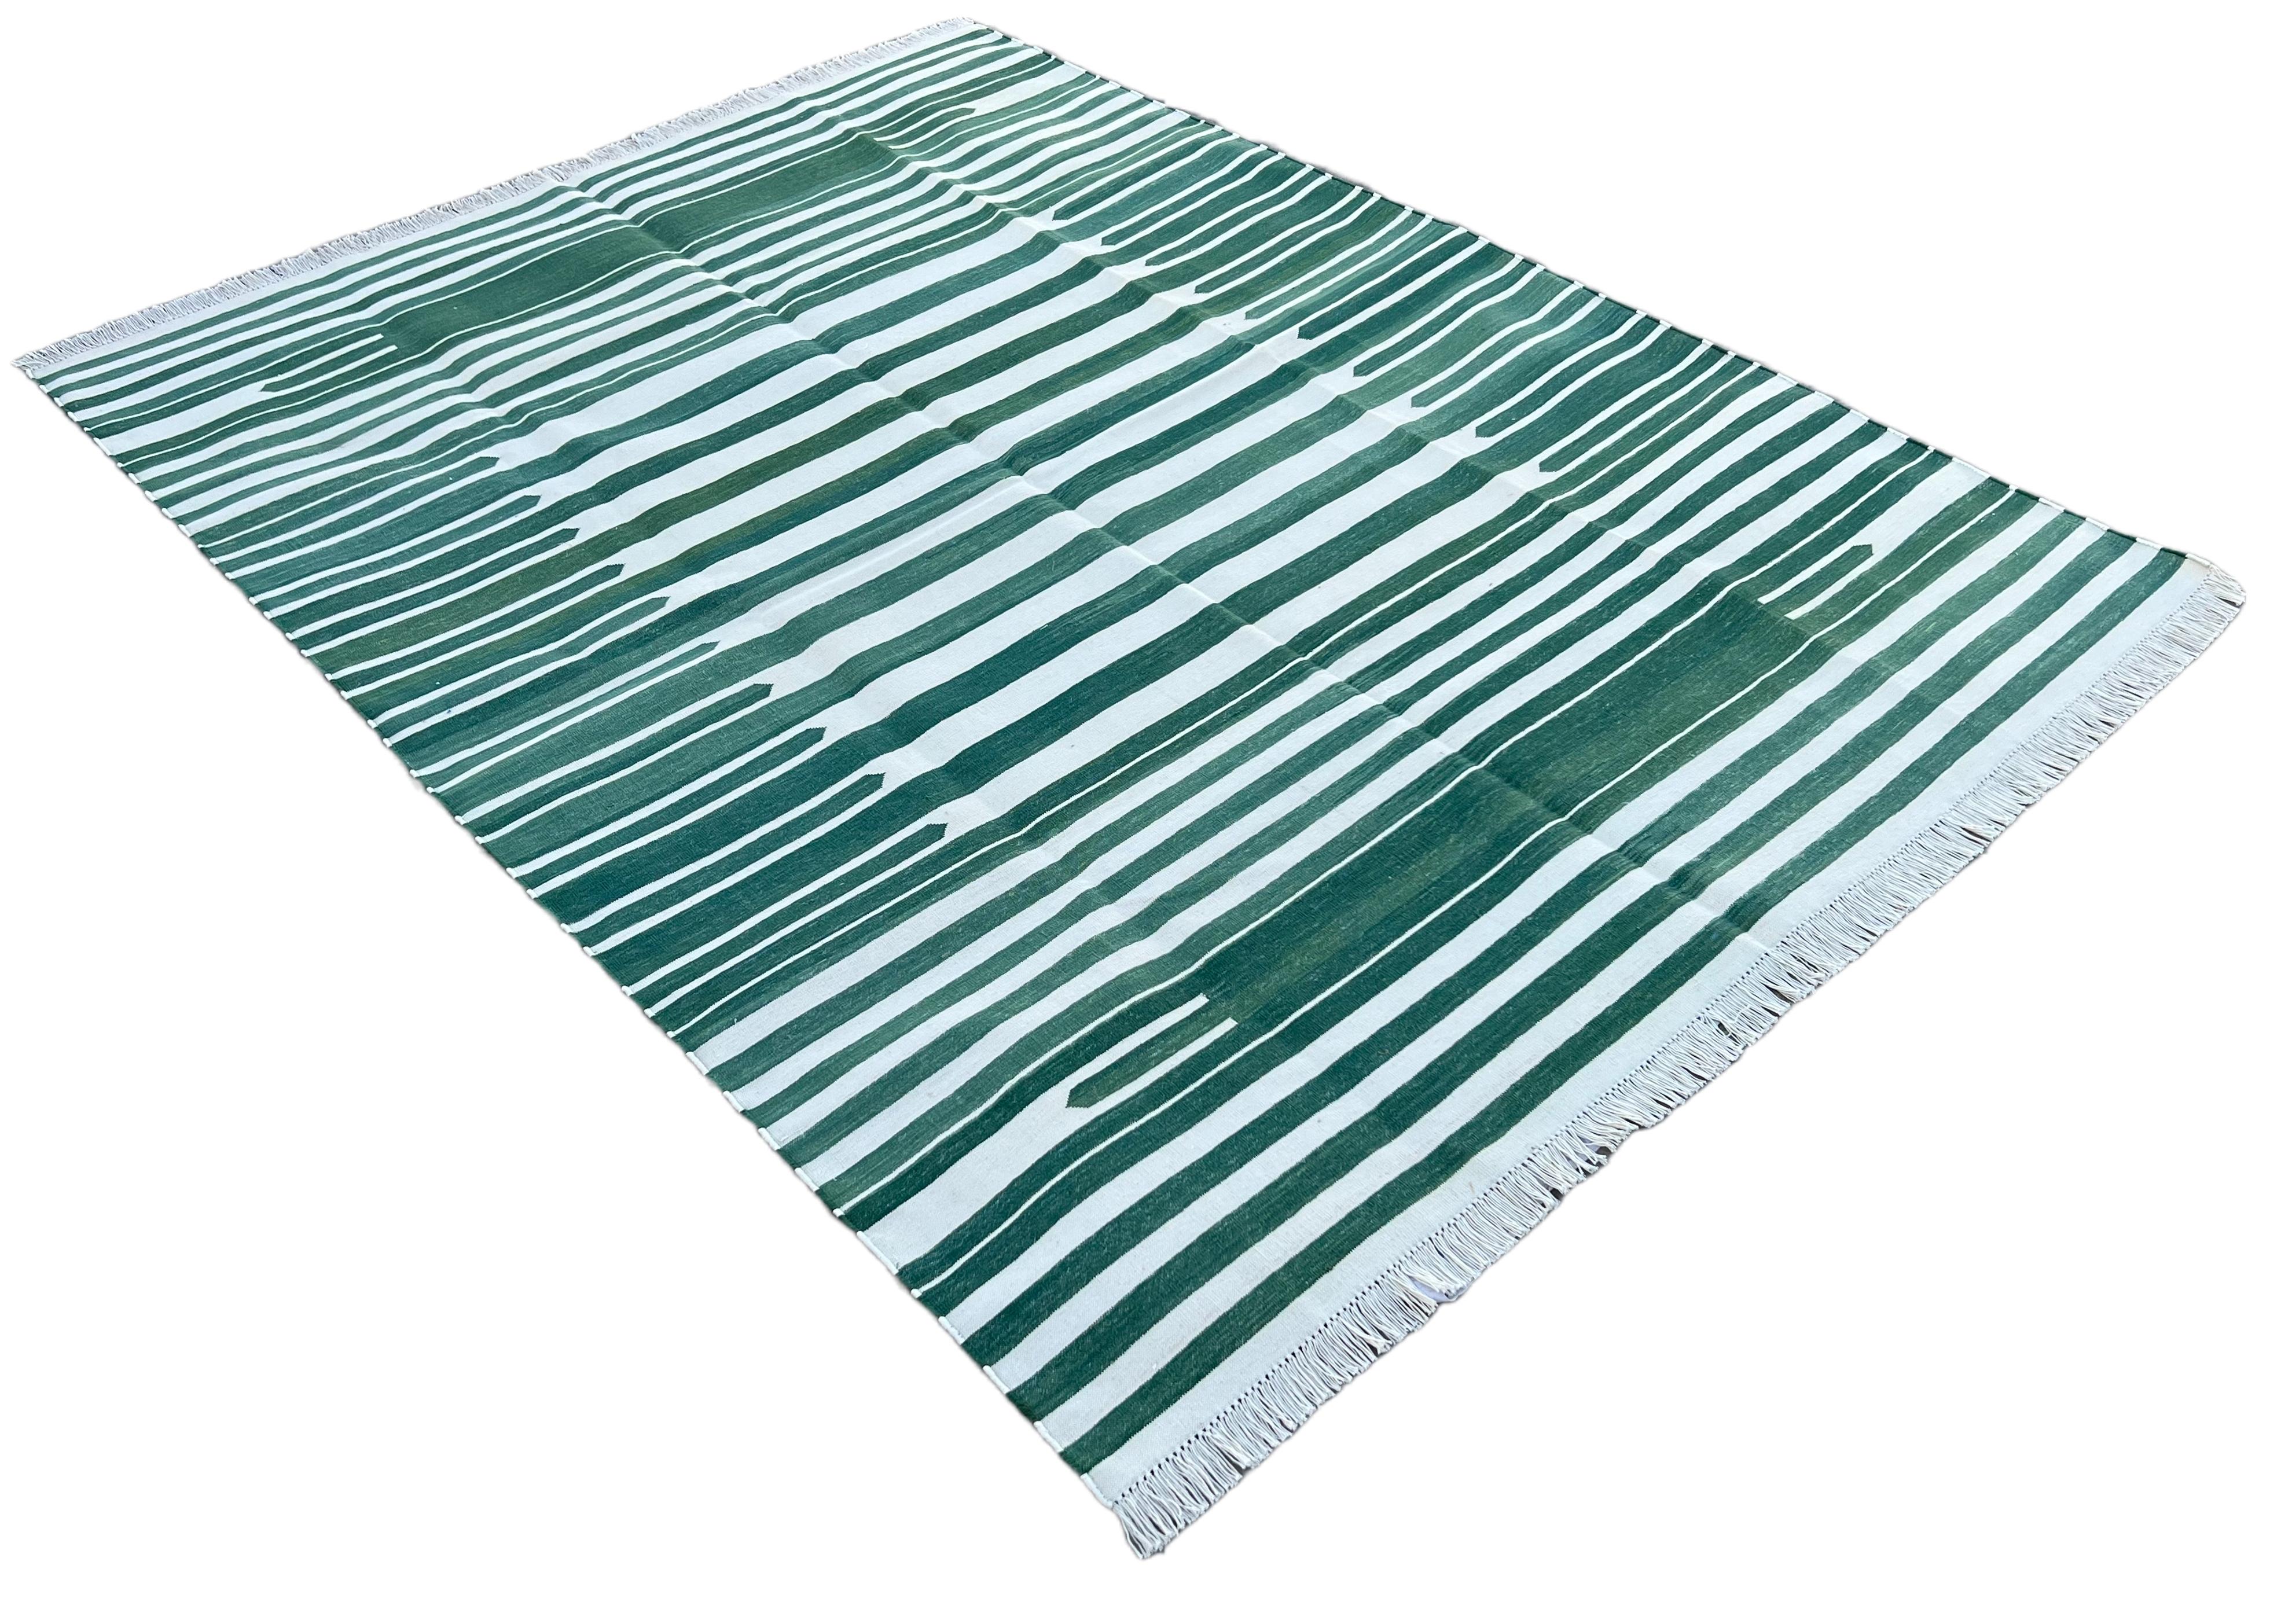 Baumwolle natürlich pflanzlich gefärbt Waldgrün und weiß gestreift Teppich-5'x7'
Diese speziellen flachgewebten Dhurries werden aus 15-fachem Garn aus 100% Baumwolle handgewebt. Aufgrund der speziellen Fertigungstechniken, die zur Herstellung